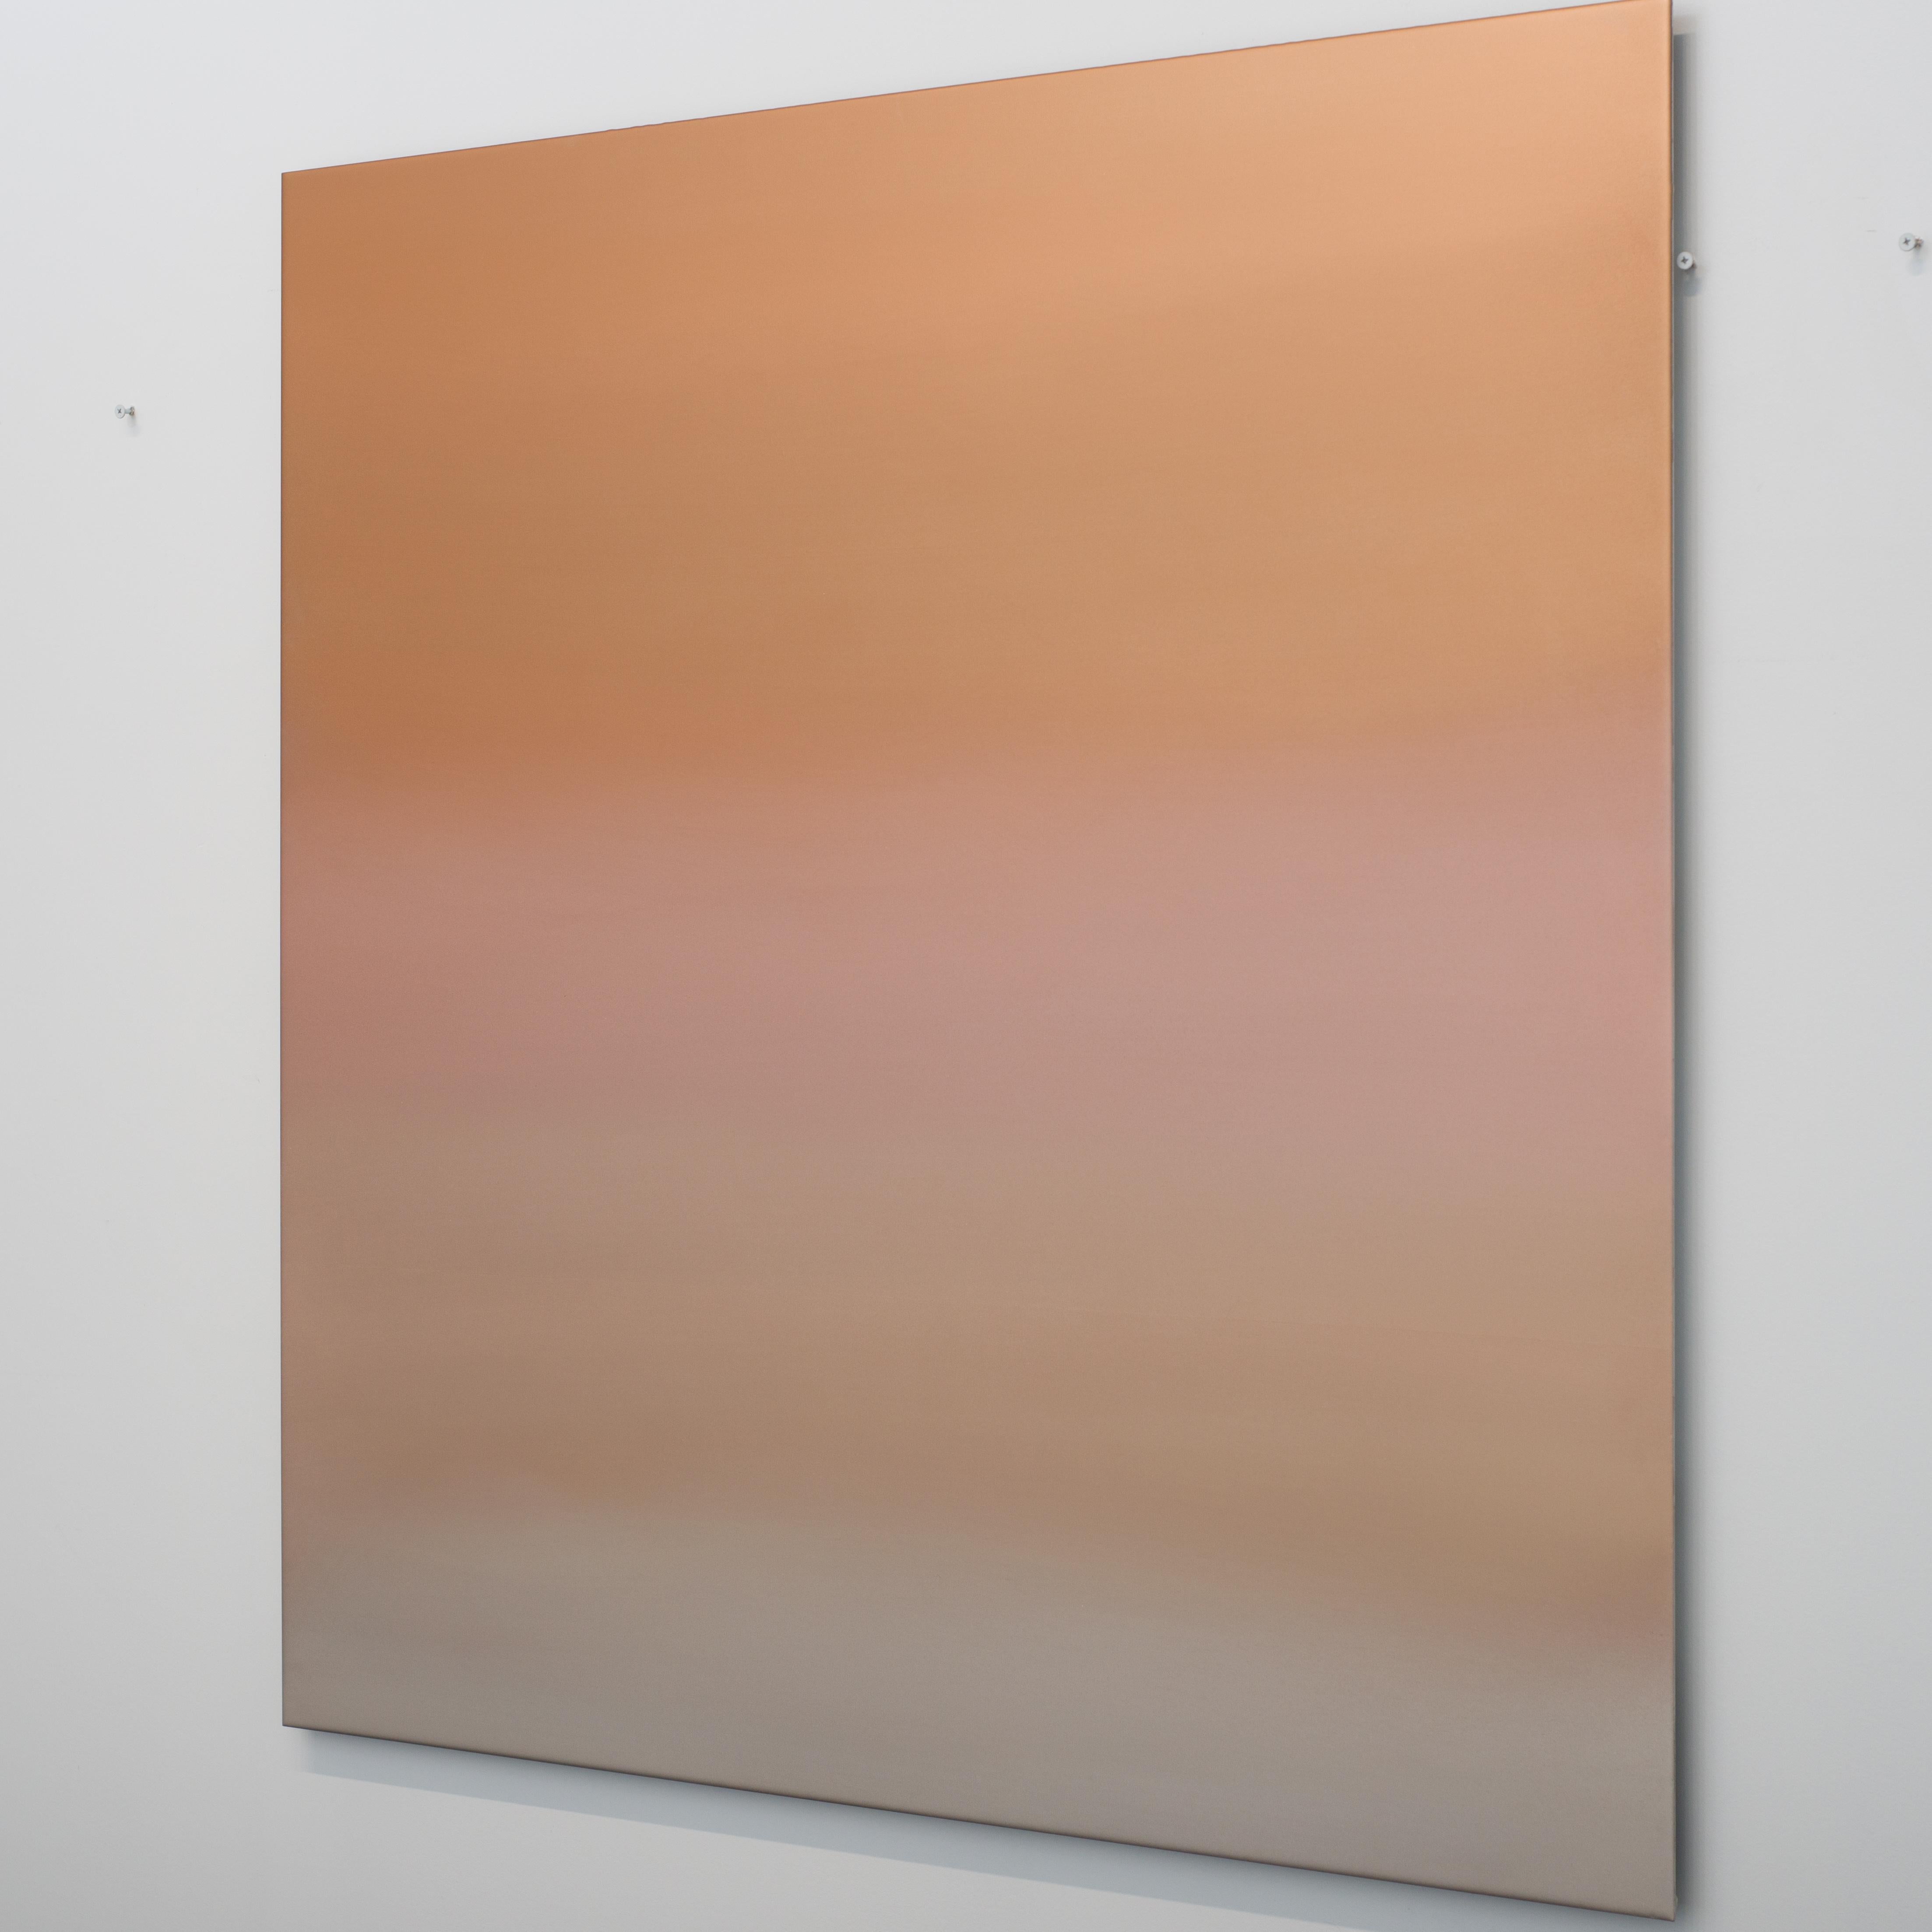 Faint Orange Brown Pink 2.20.4.4.1.M.1.2.3.G.14 - Contemporary Mixed Media Art by Miya Ando